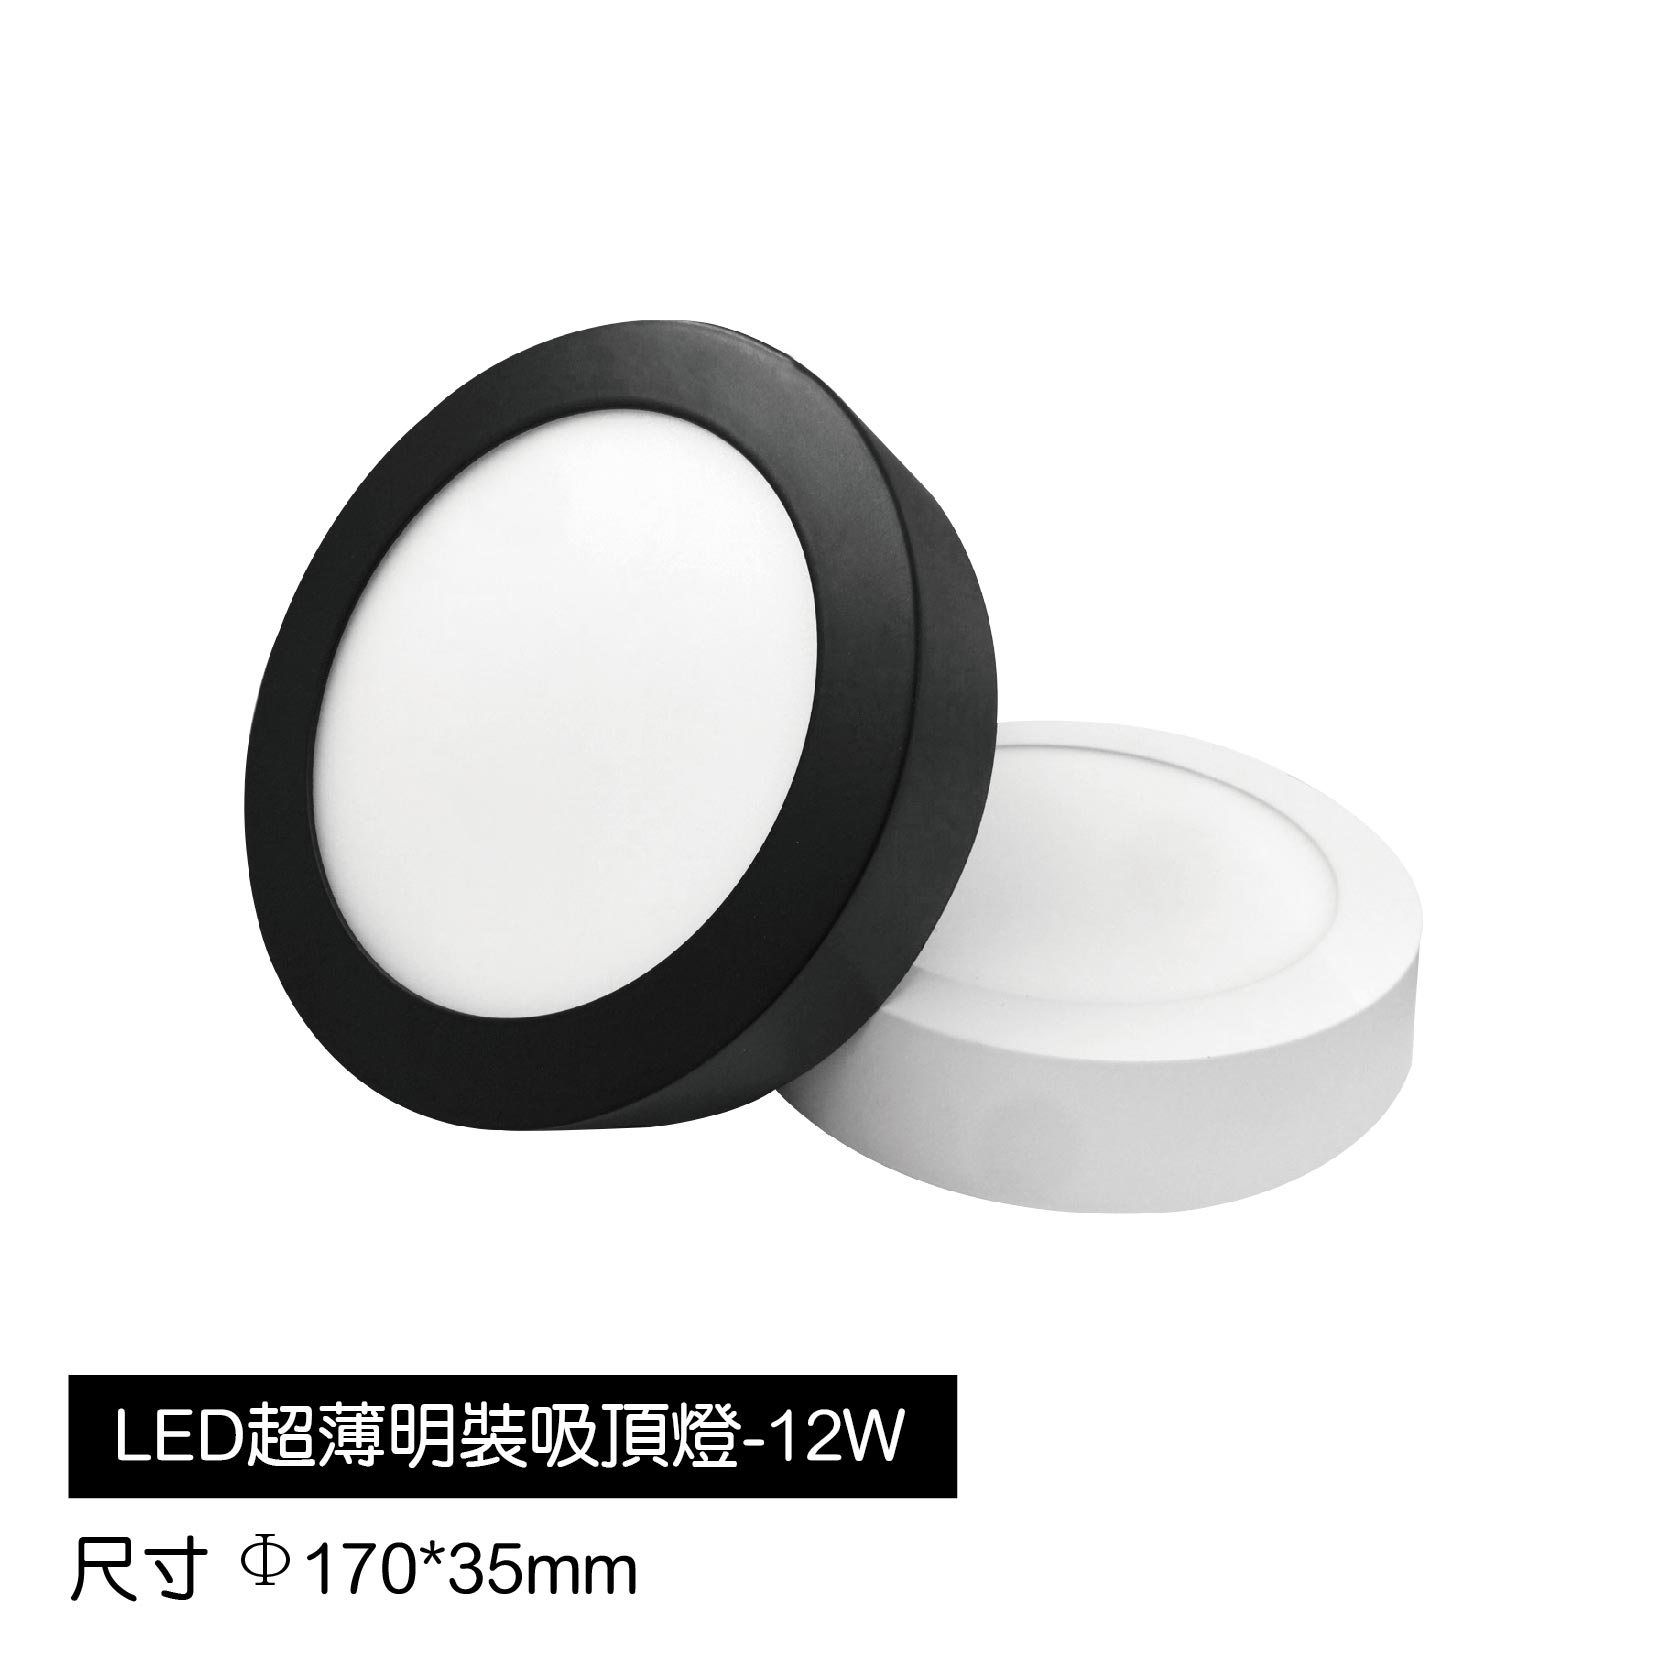 LED超薄明裝吸頂燈-12W(白)